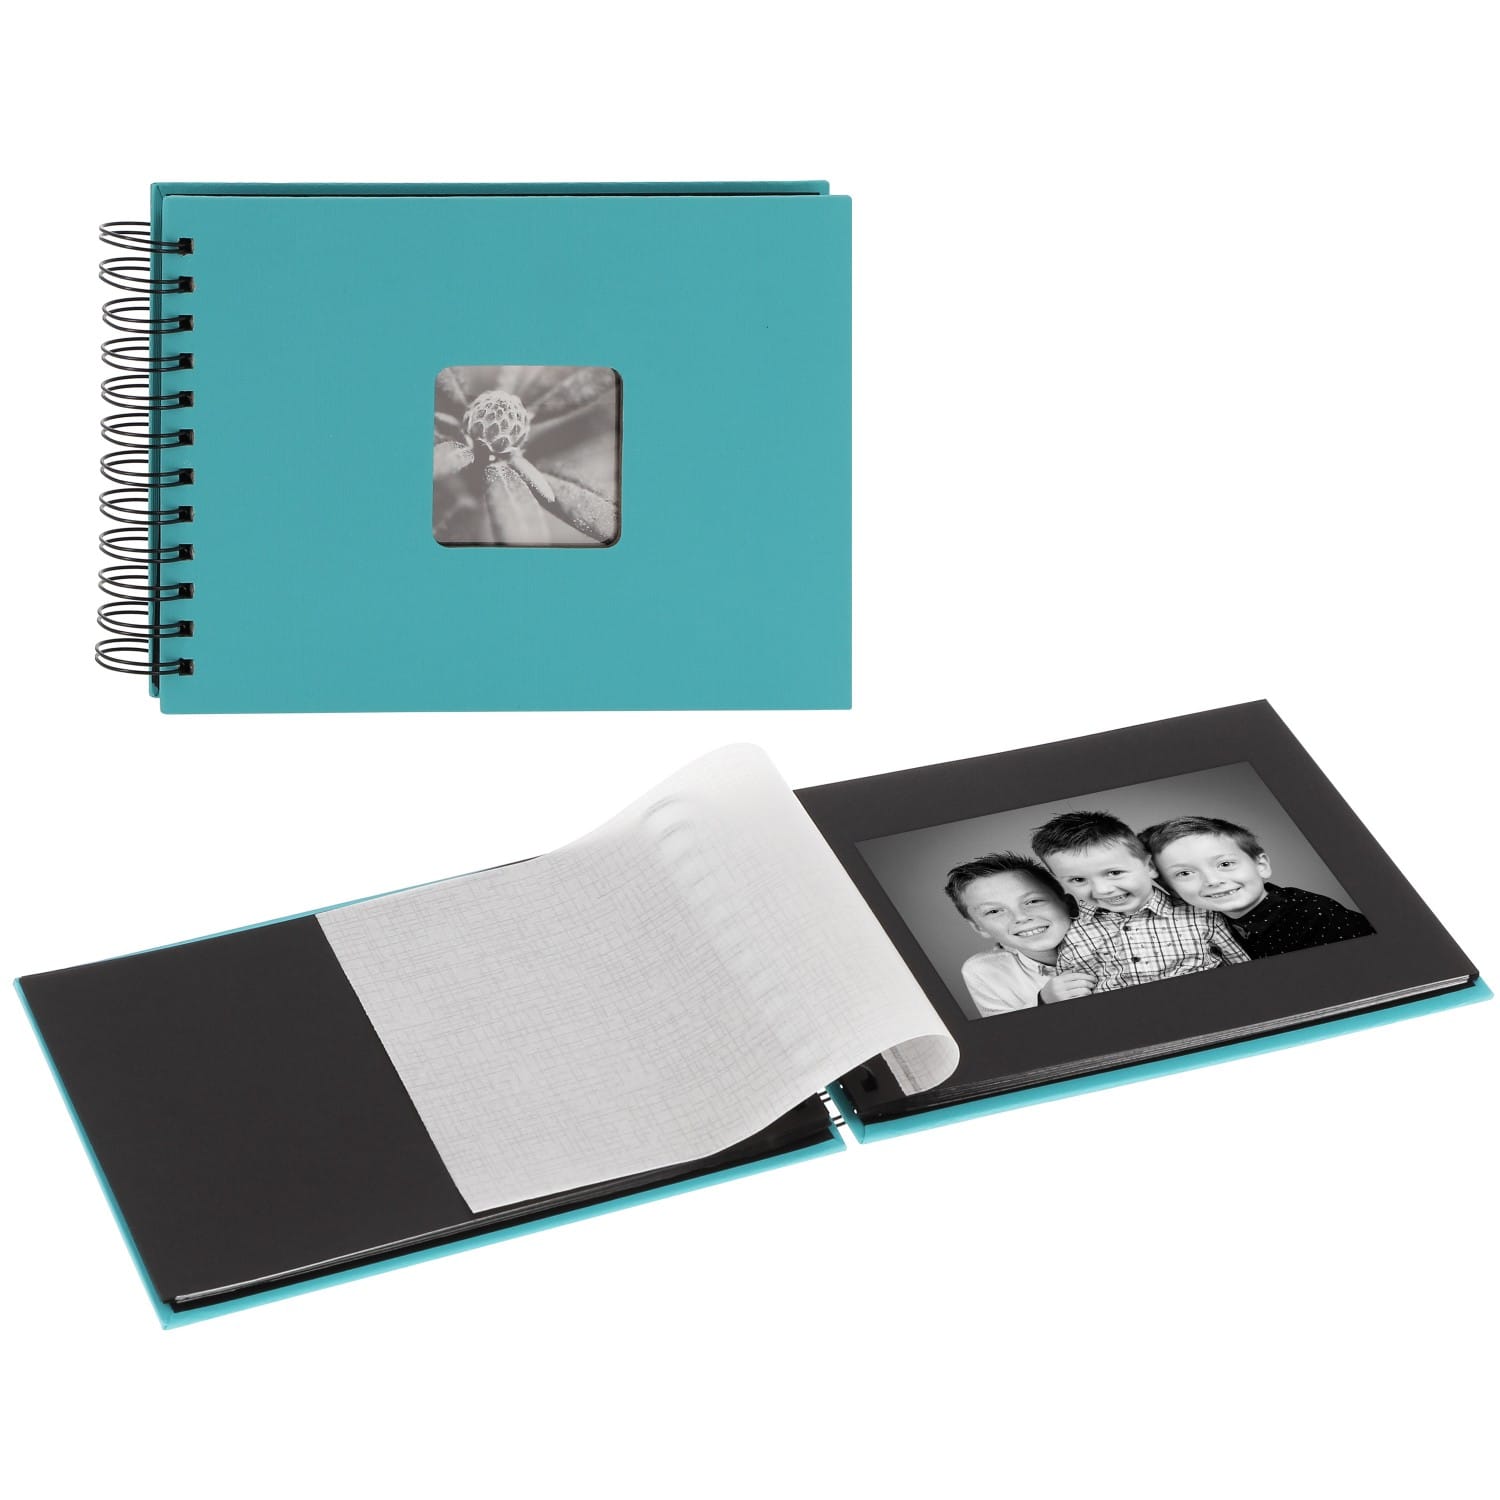 Mini album HAMA traditionnel Turquoise noires FINE cristal - - ART fenêtre Couverture feuillets + Bleue 50 - SPIRAL + 24x17cm photos 50 pages